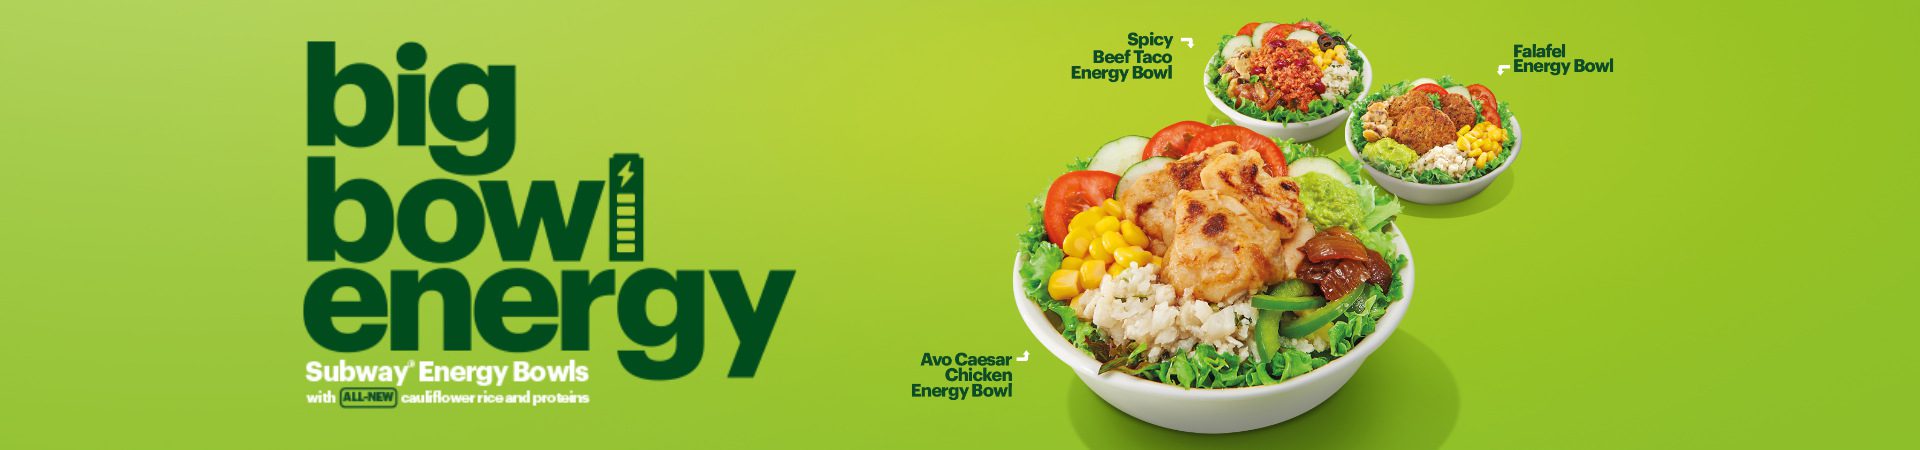 Energy Bowl